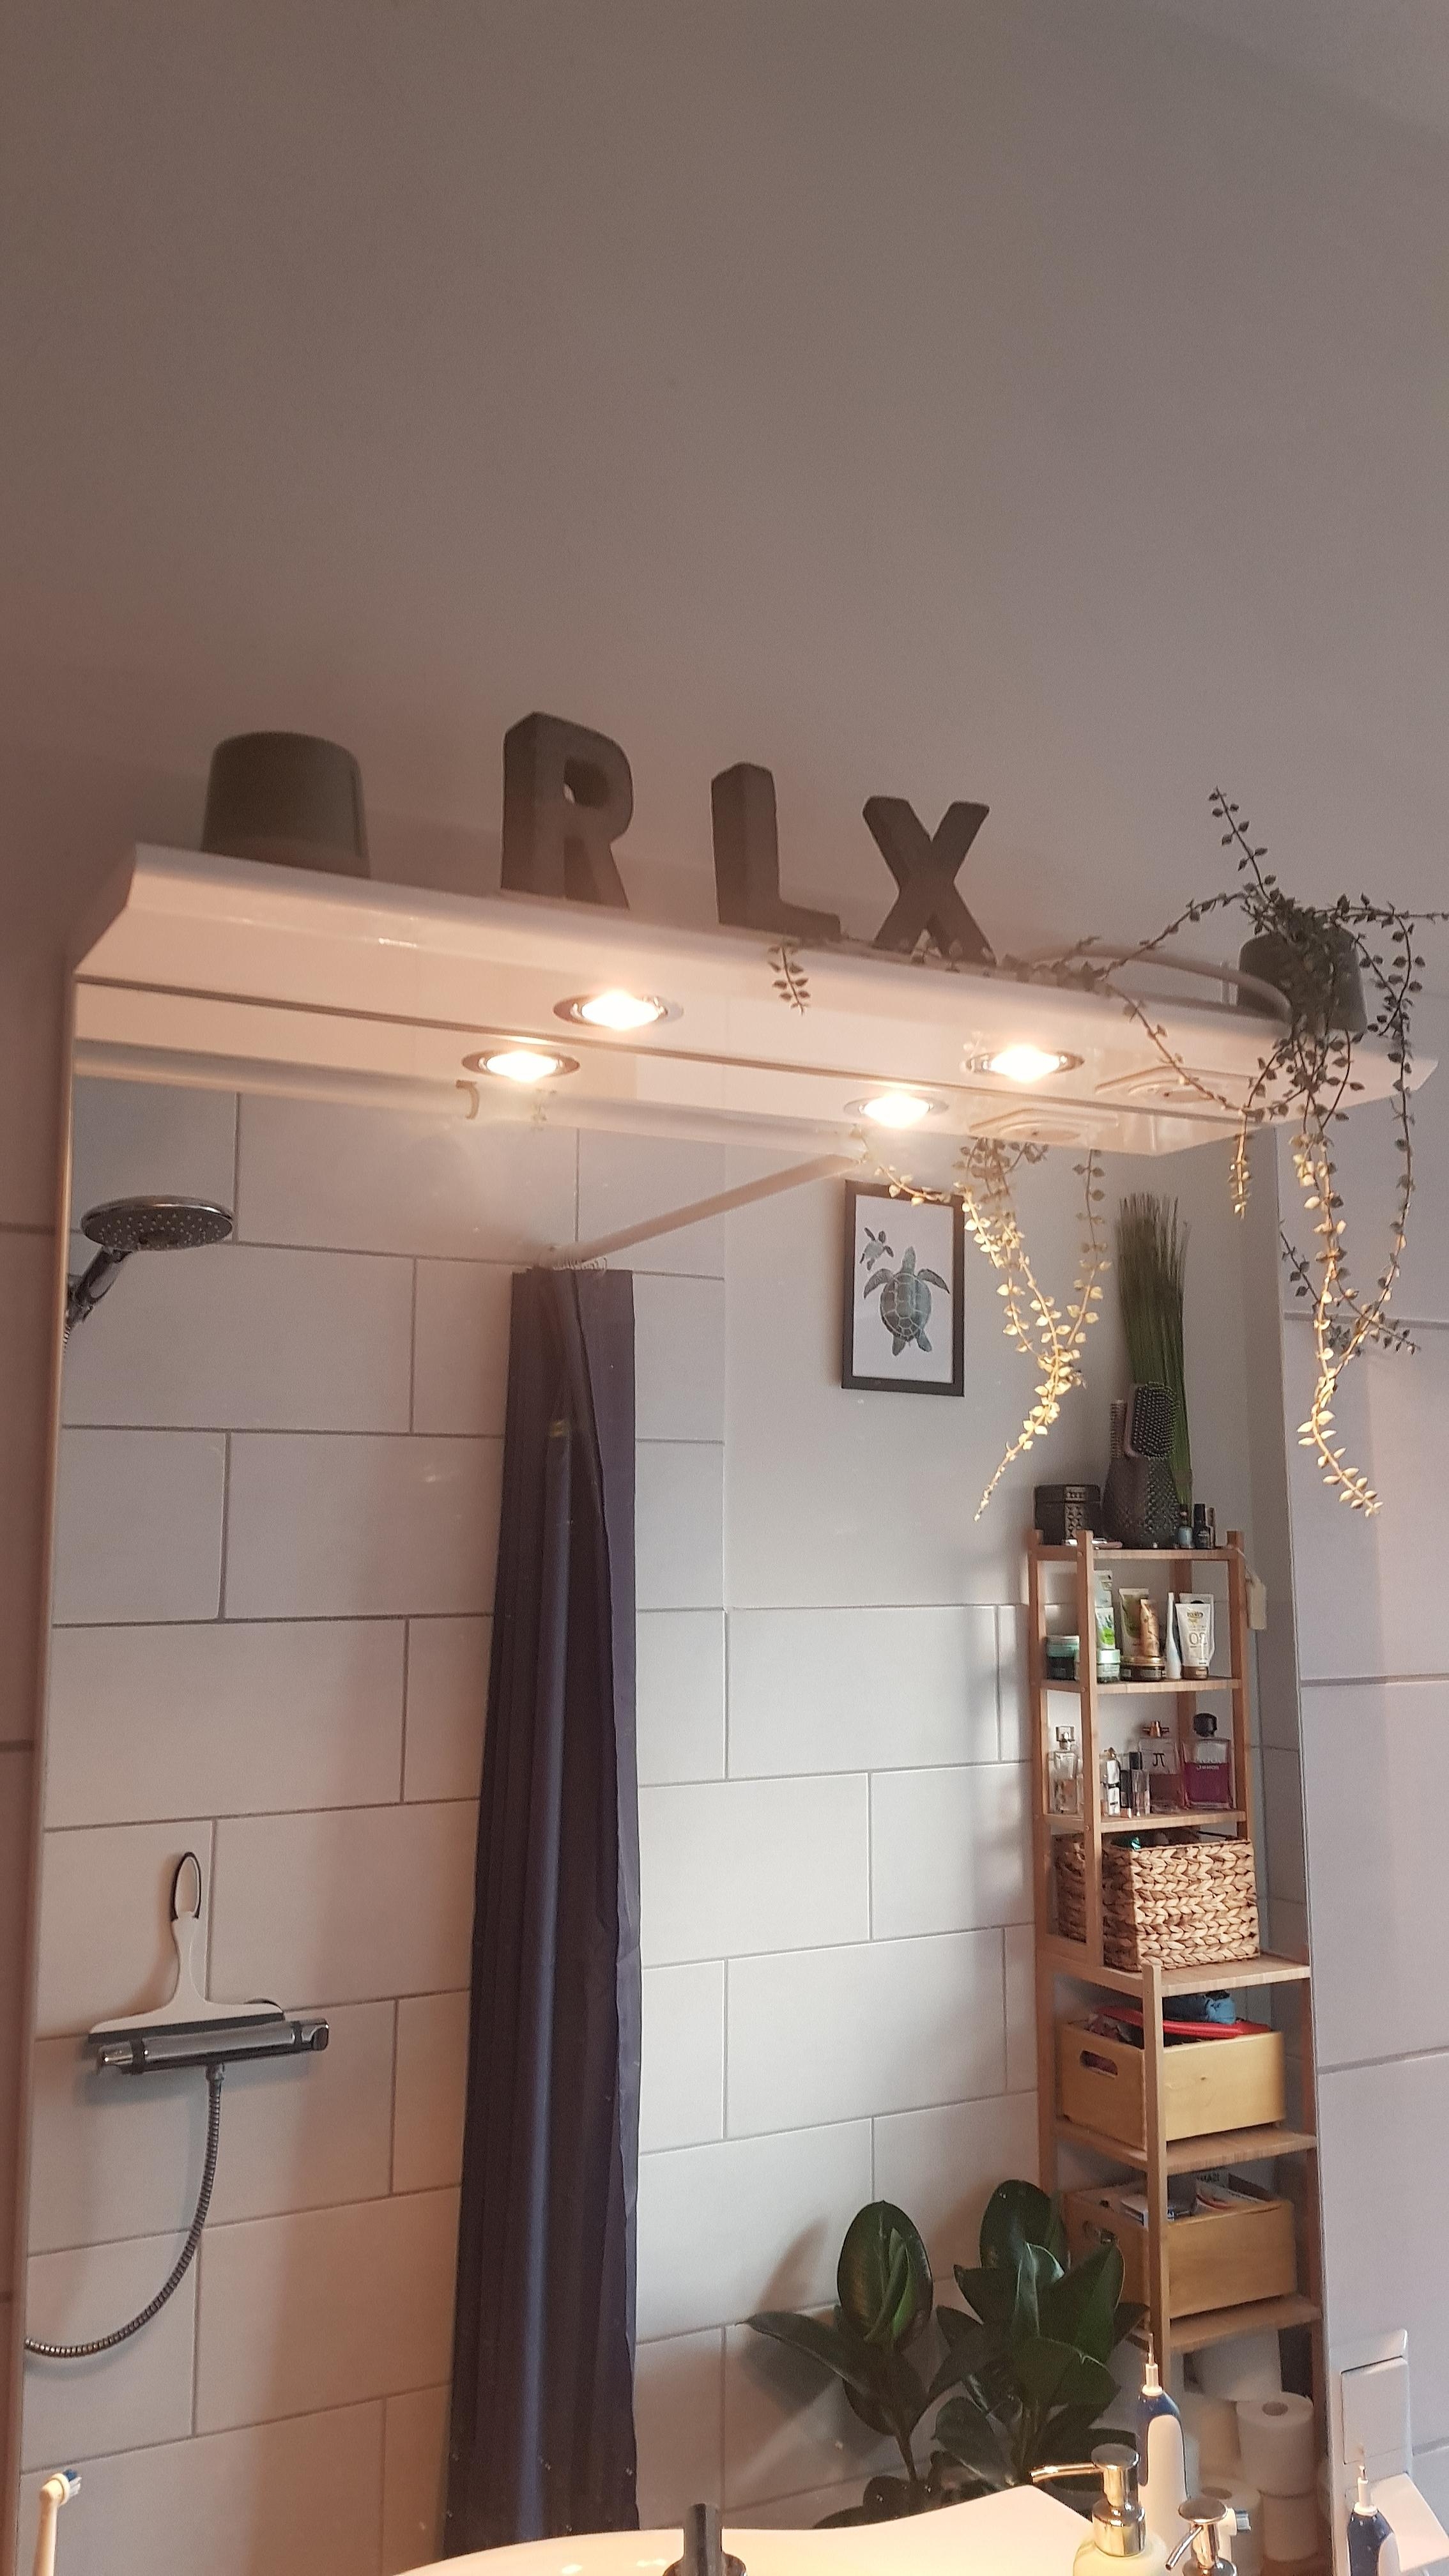 Relax 🌿 Badezimmerdetails! #interior #DIY #badezimmer #interior #ourhome 